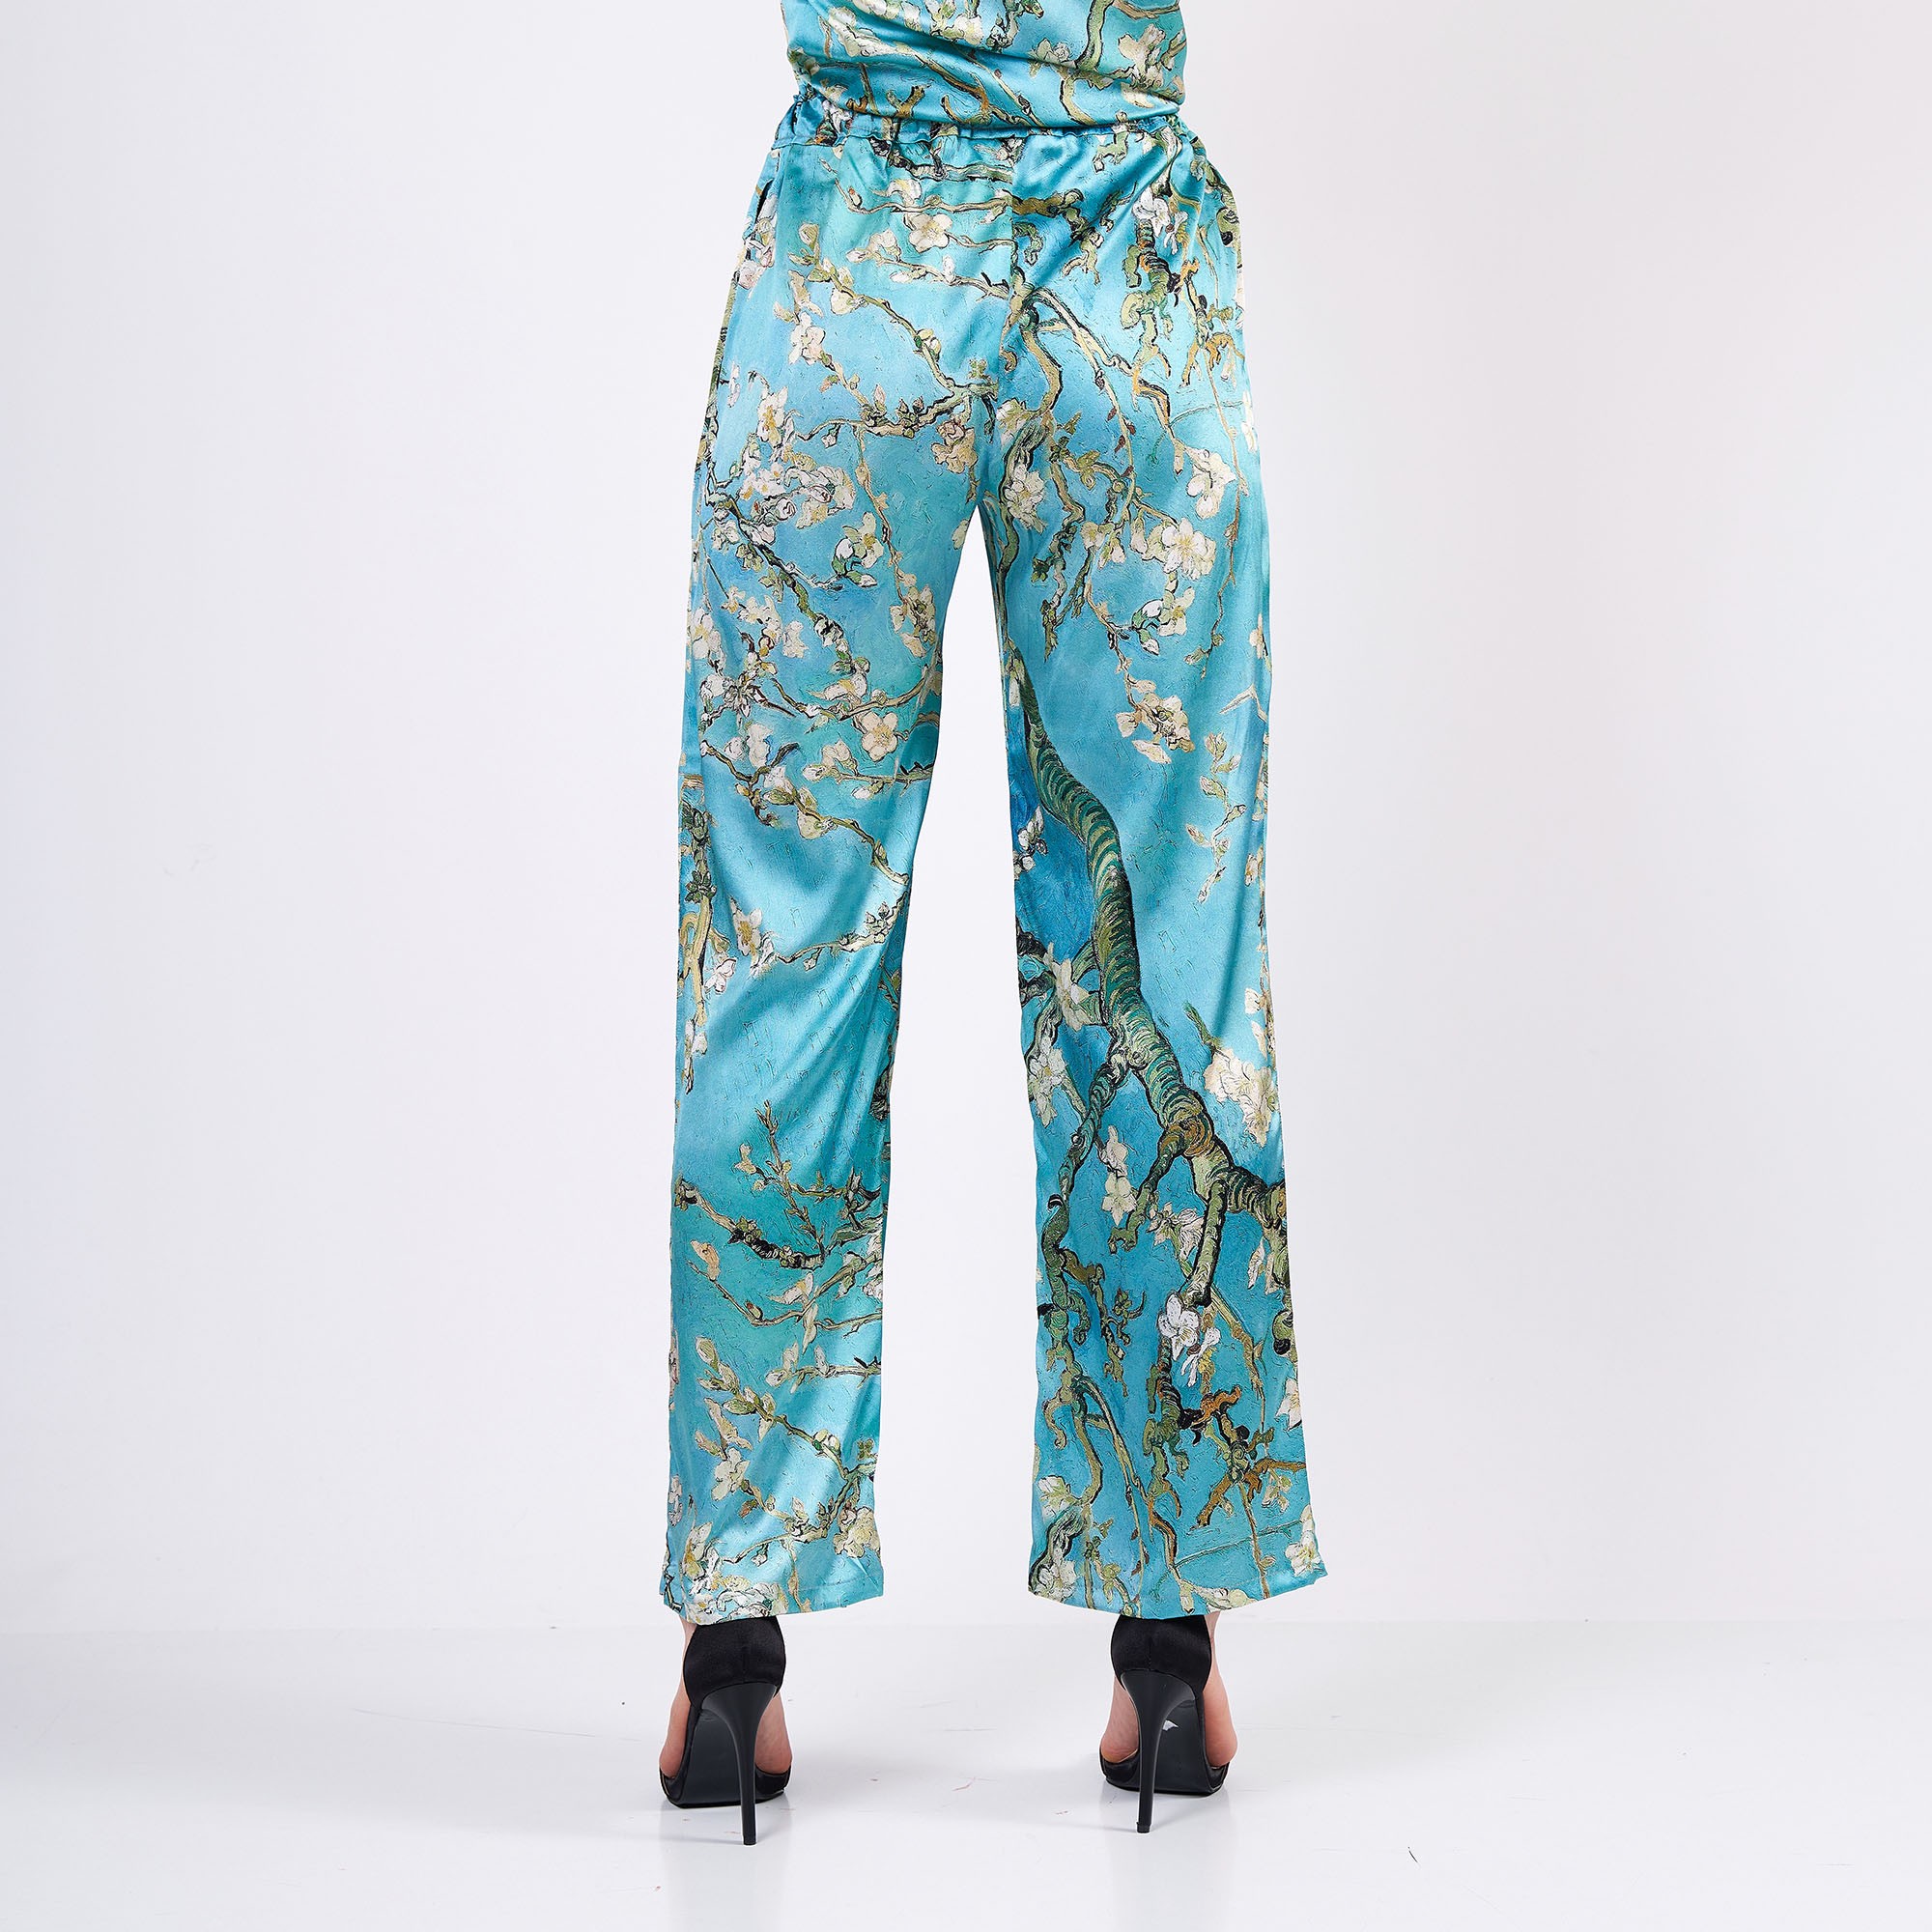 Saf İpek Gömlek-Pantolon Takım/Pijama Takımı | Turkuaz Van Gogh Badem Ağacı | Nomads Felt